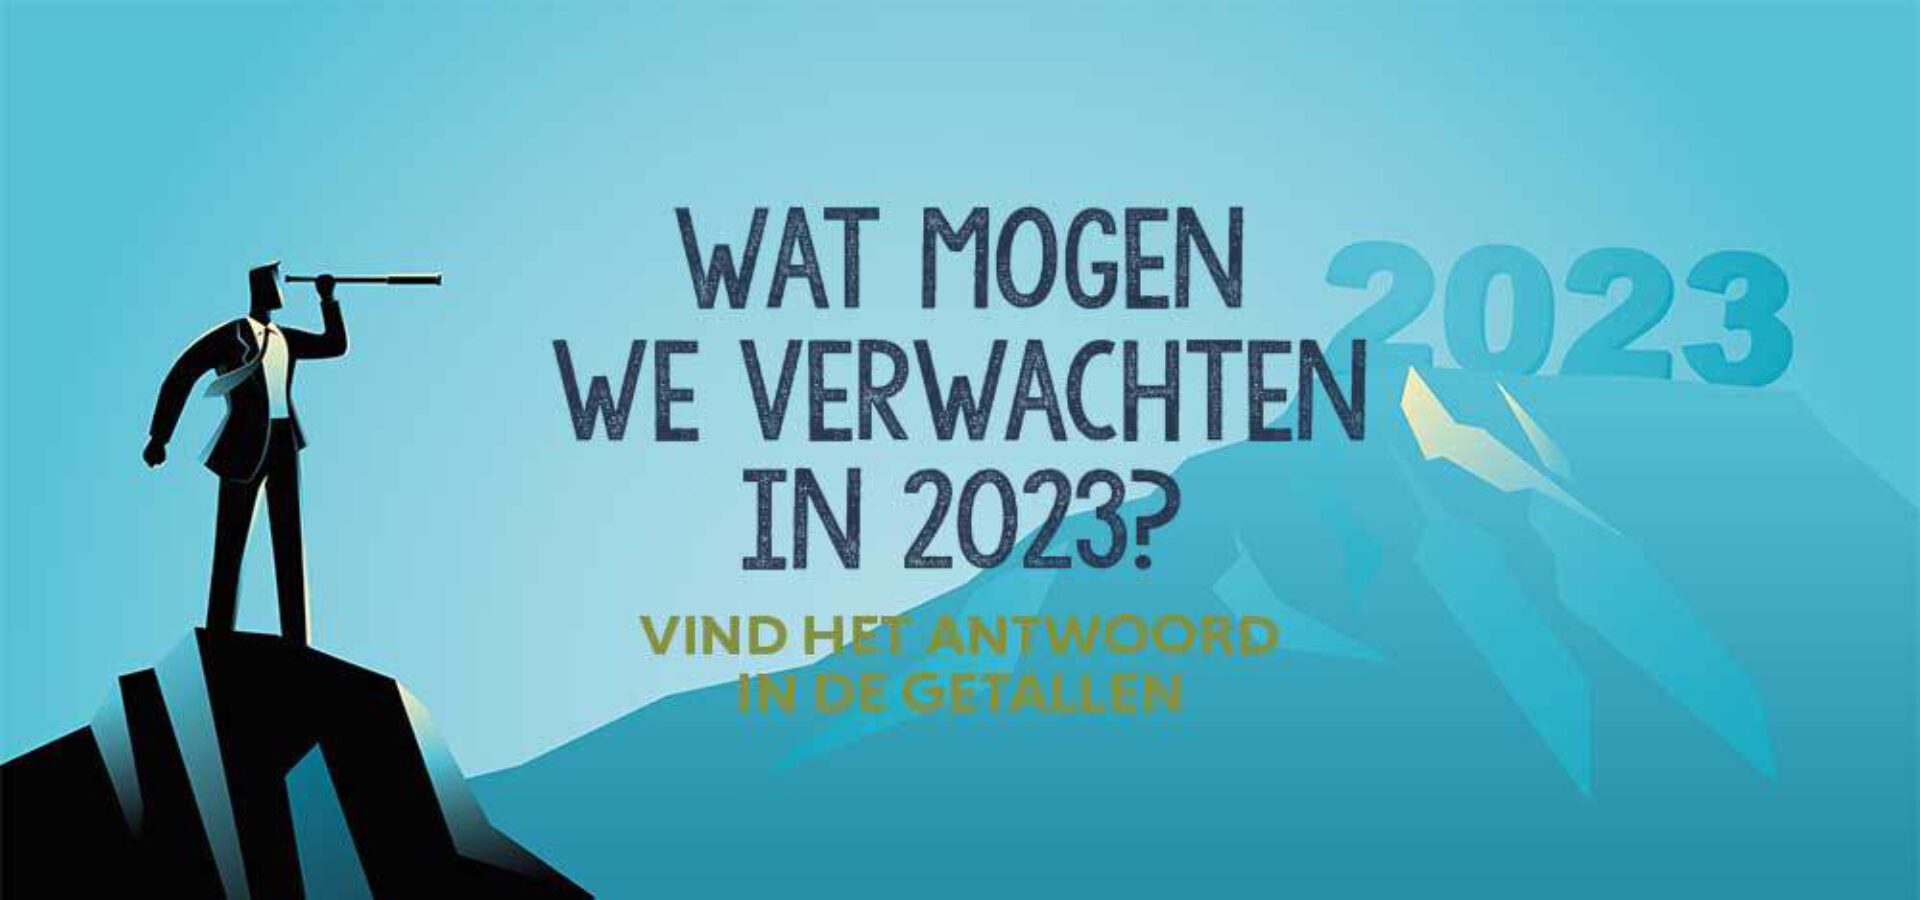 Wat mogen we verwachten in 2023? Vind het antwoord in de getallen